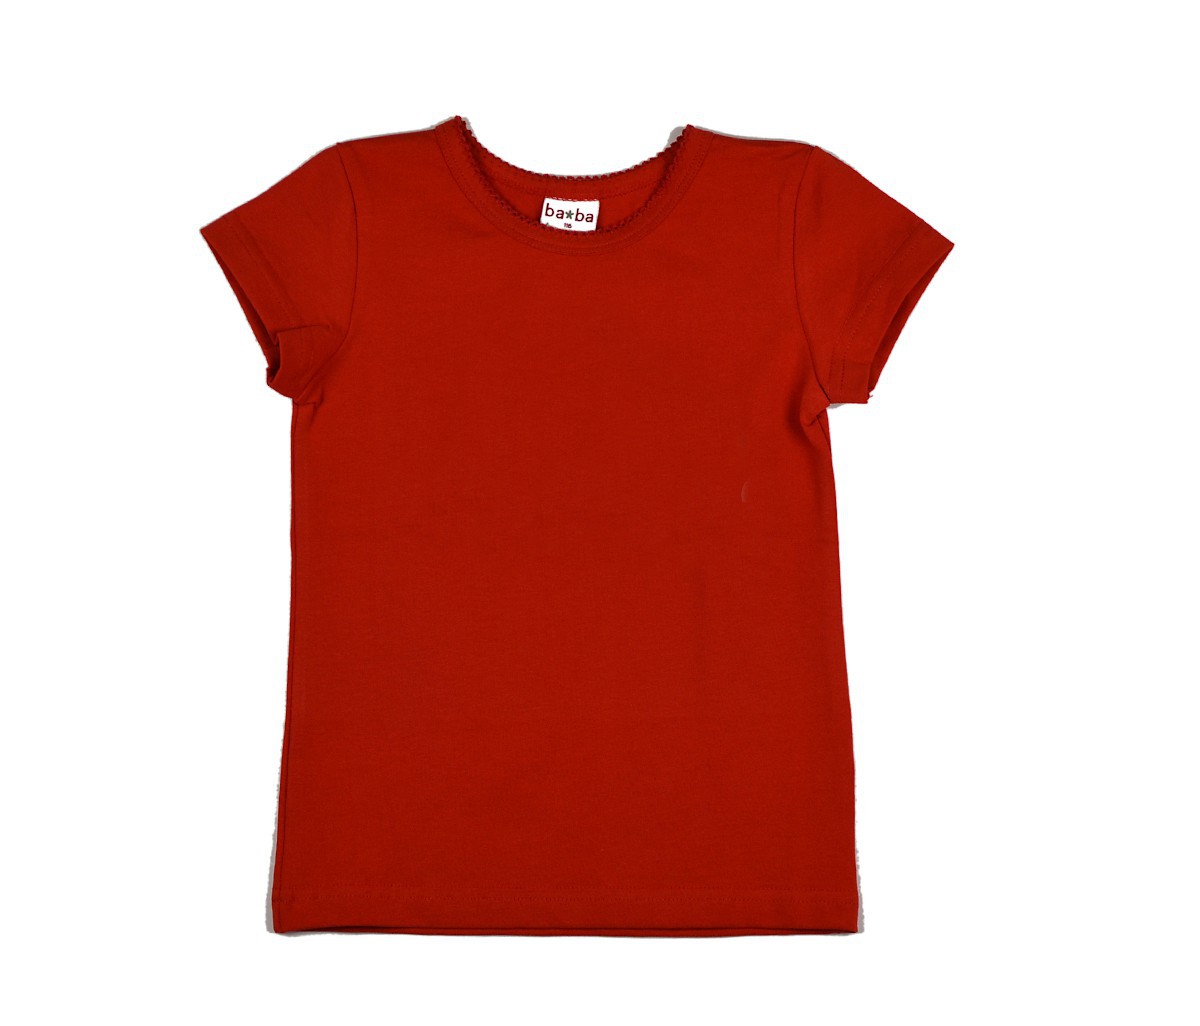 girls plain red t shirt